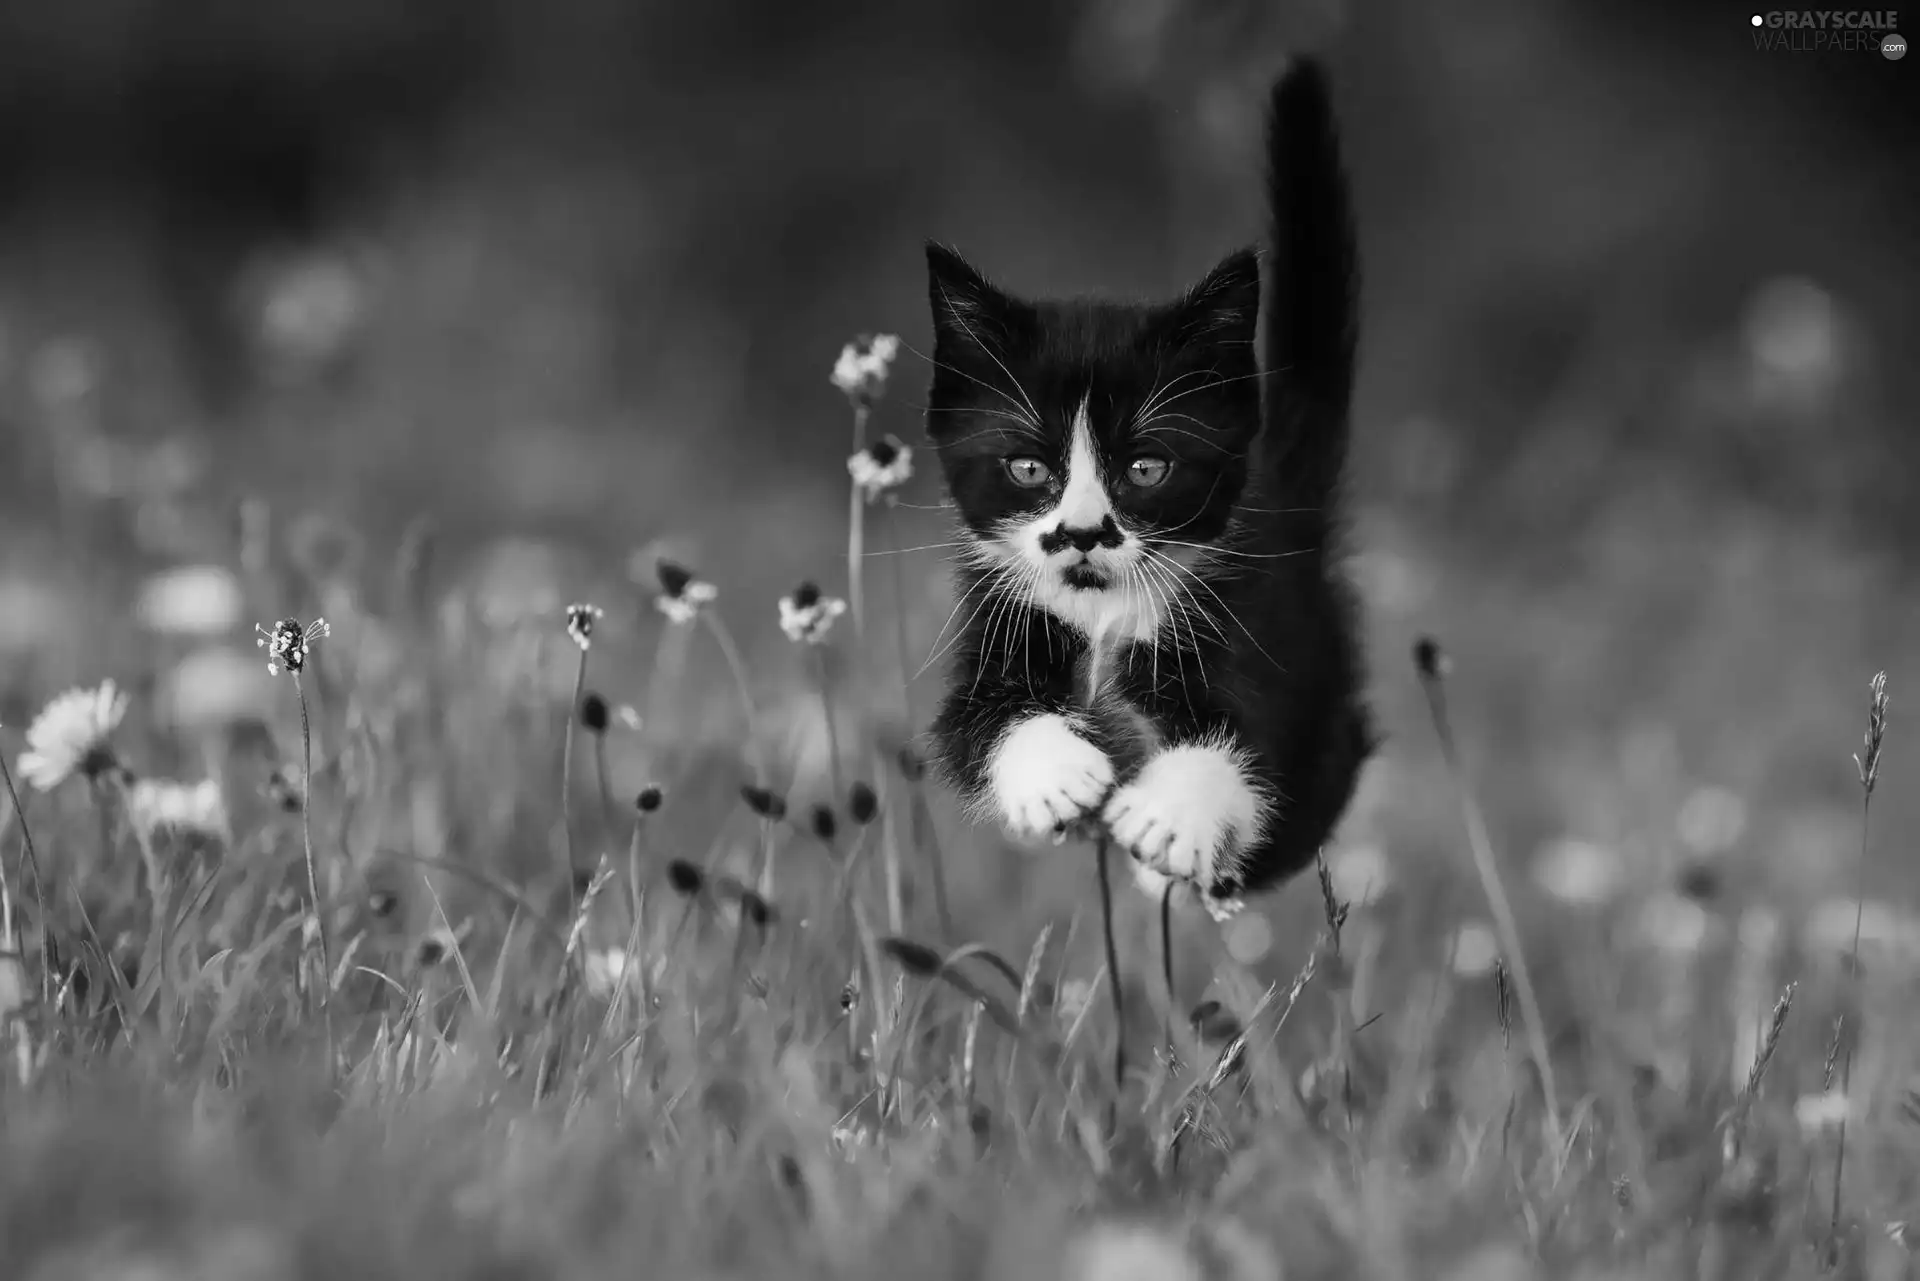 Black, jump, grass, kitten